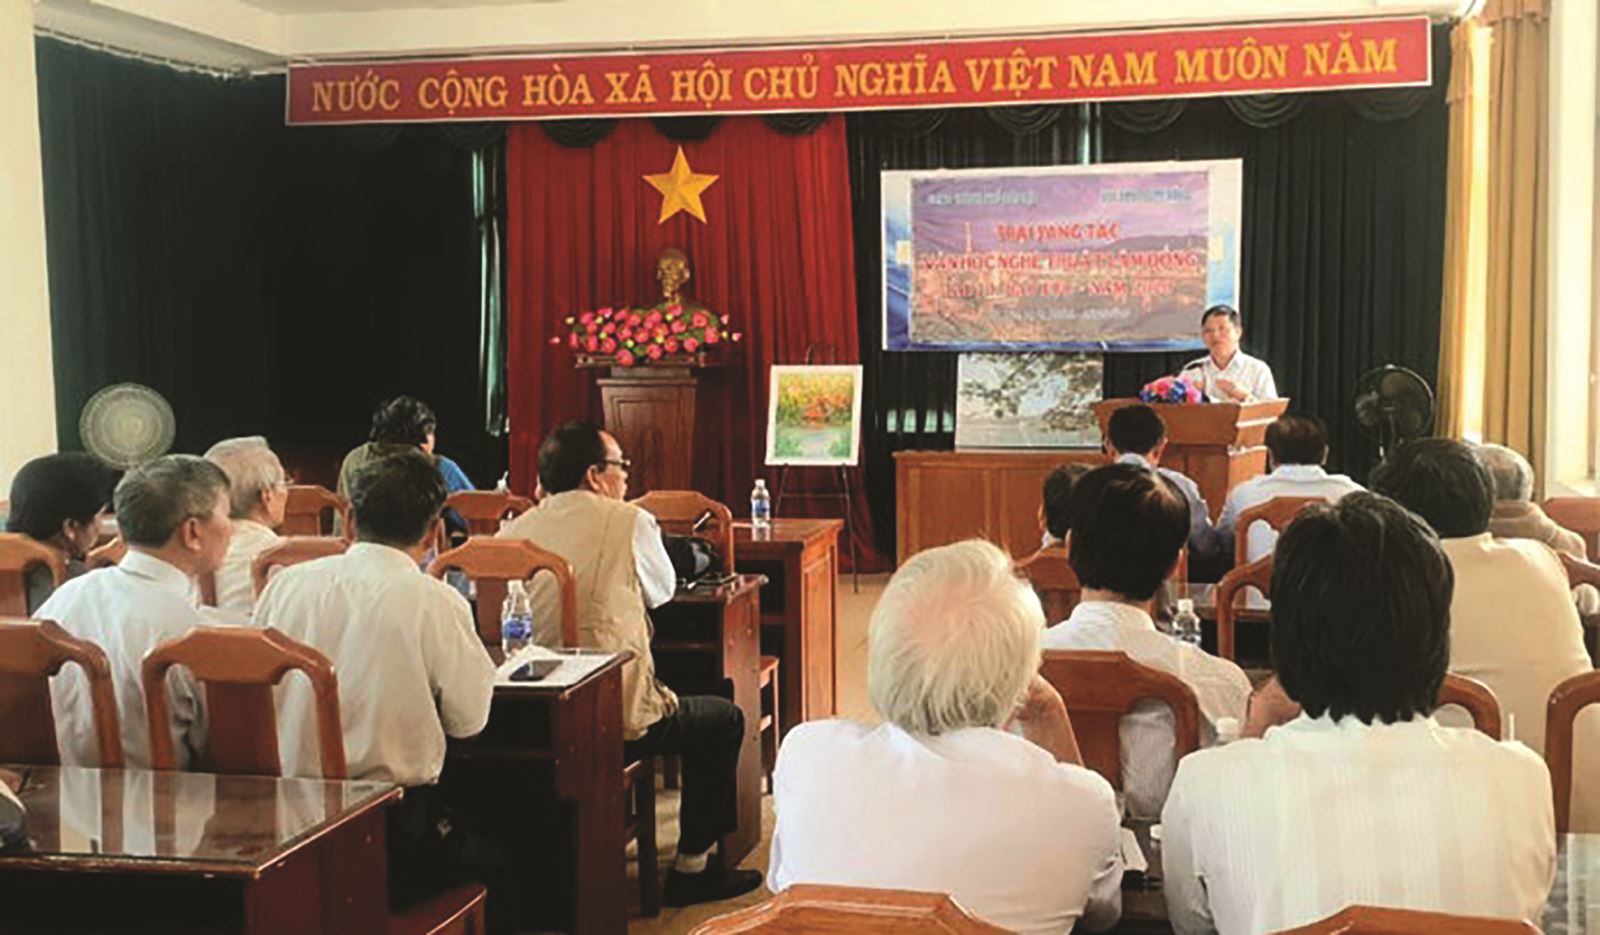 Lâm Đồng: Tổ chức trại sáng tác văn học nghệ thuật 